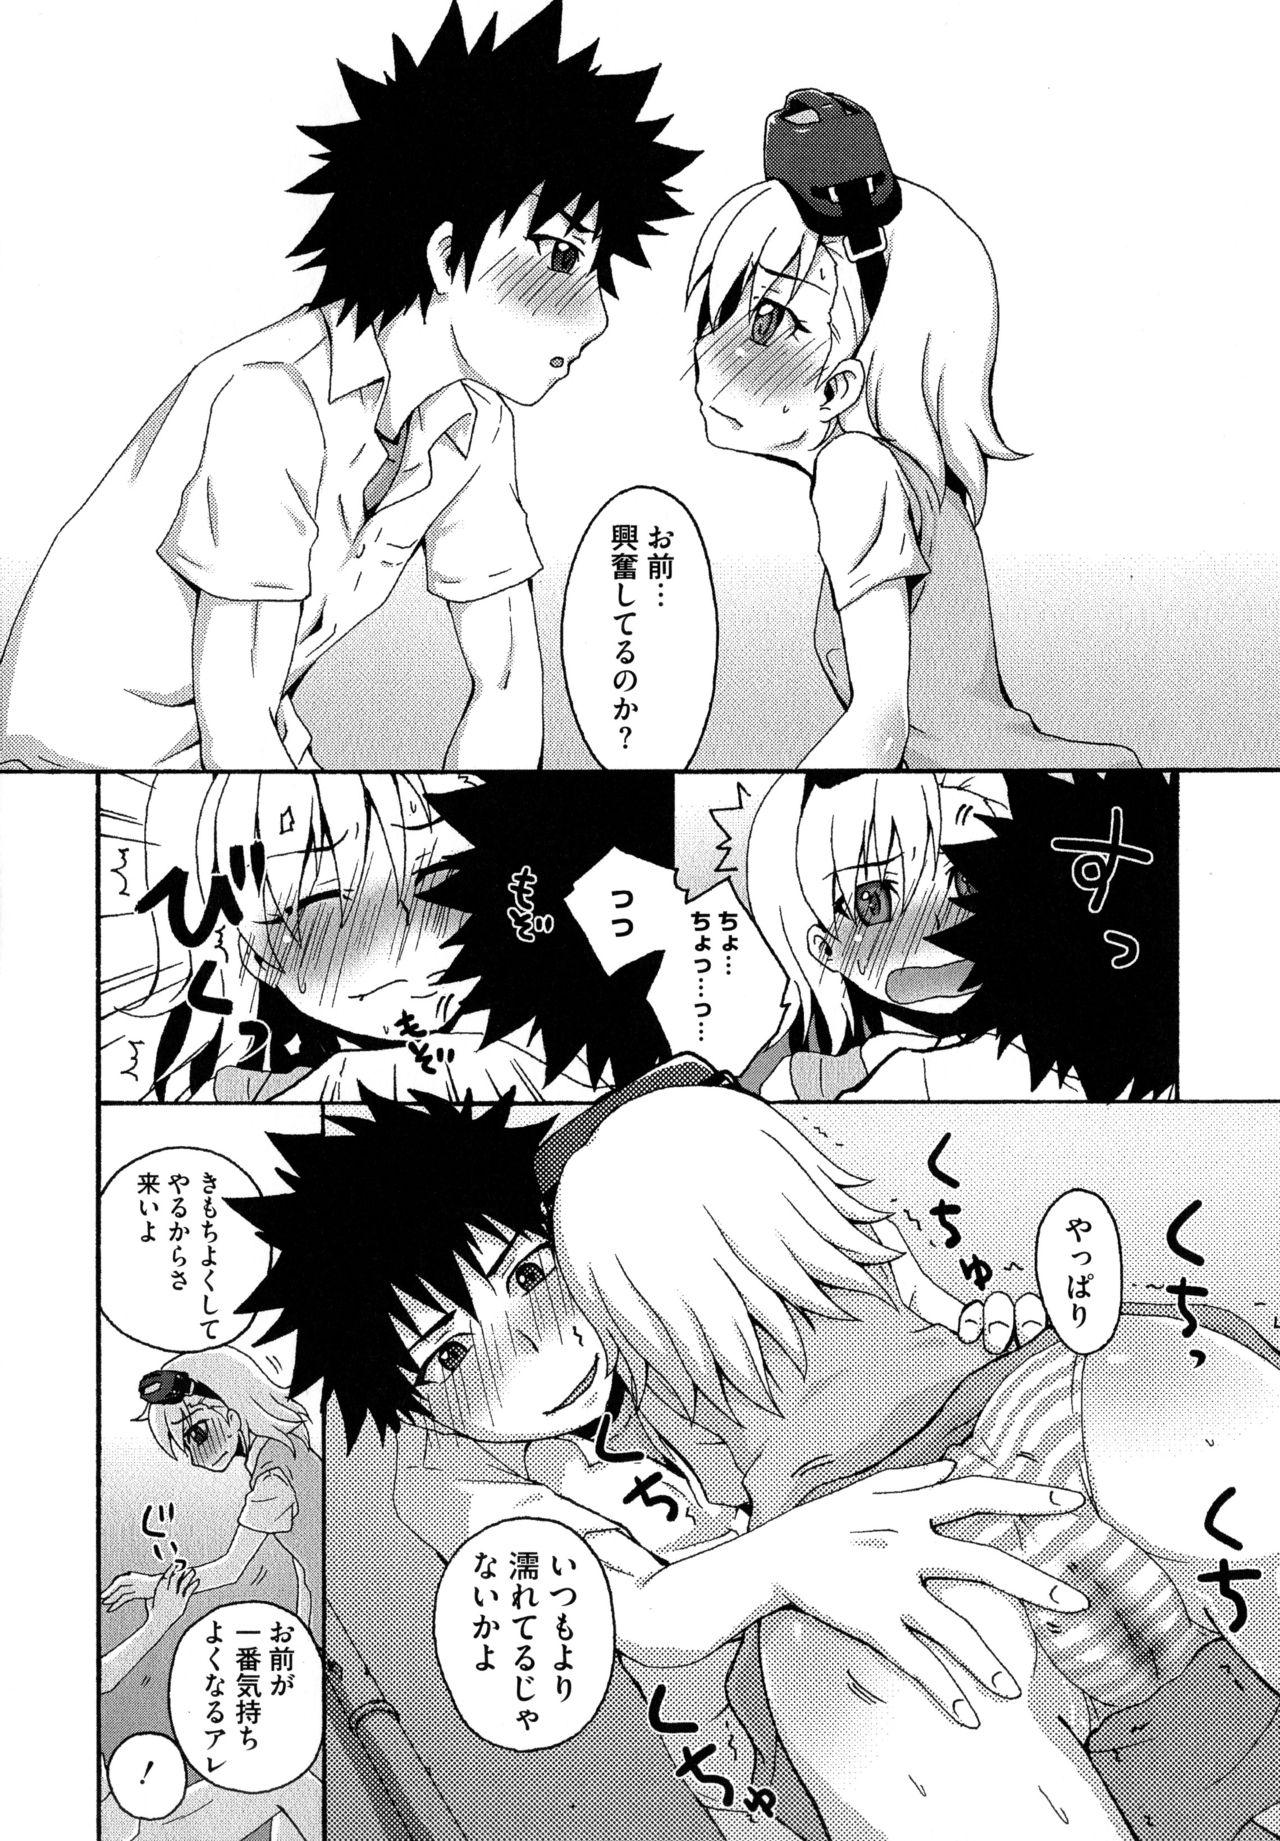 Lovers Toaru Muhou na Sexual Addict - Toaru kagaku no railgun Virginity - Page 12